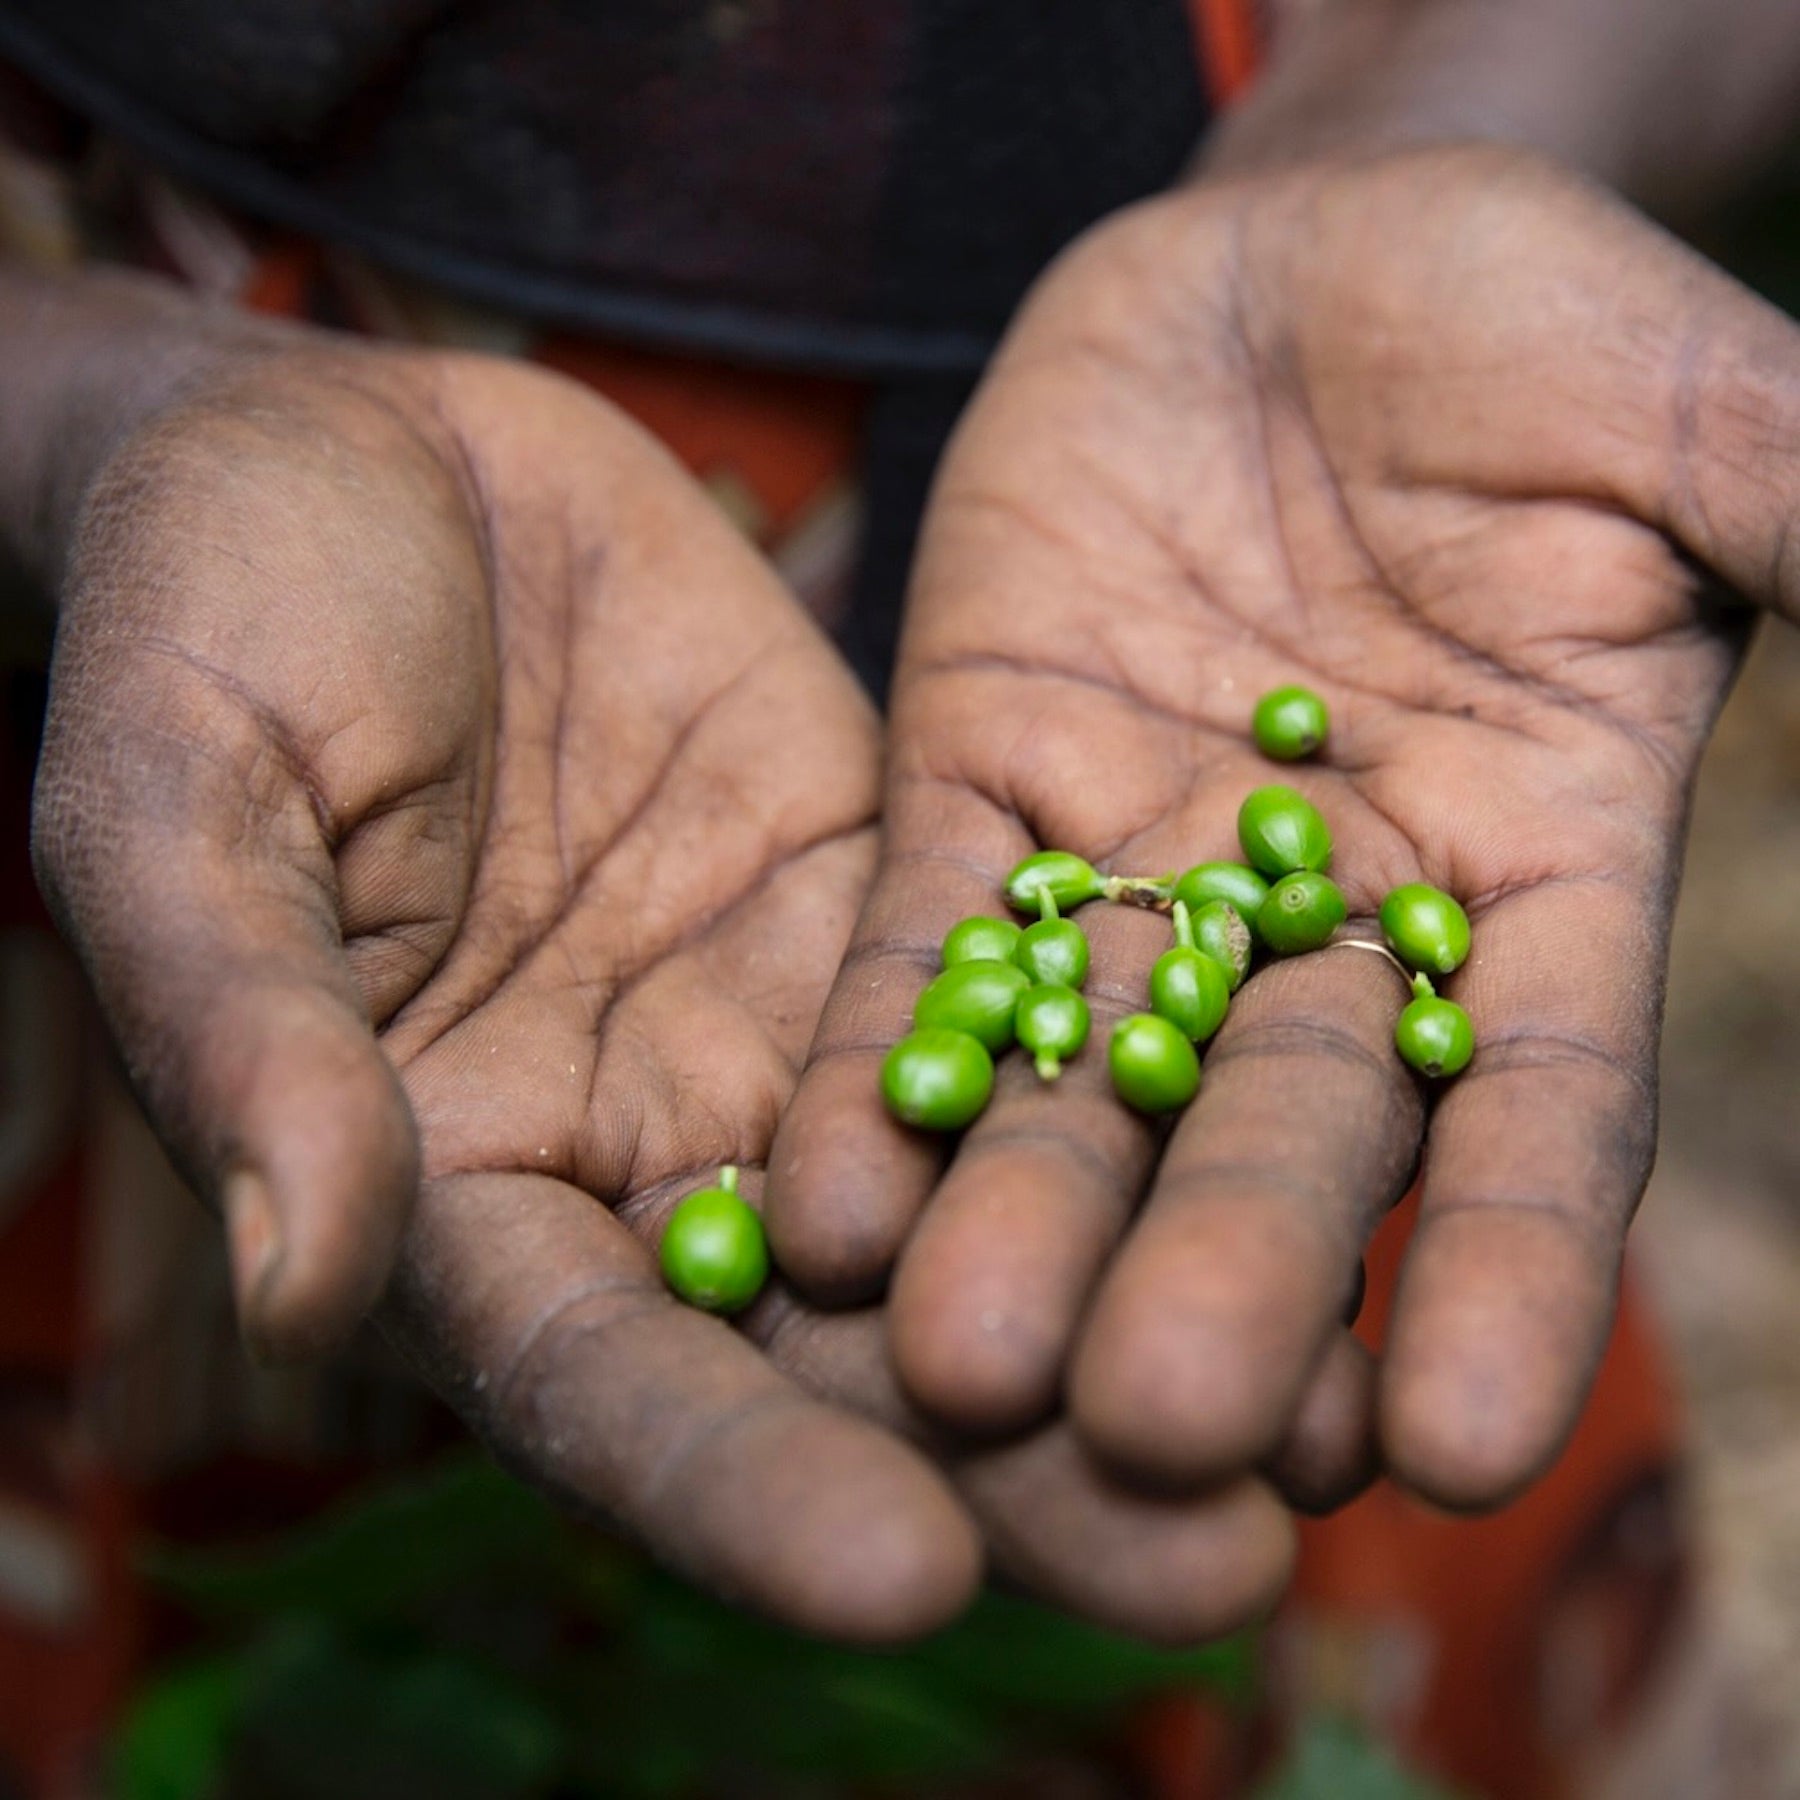 Bohnen der Kaffeepflanze aus der Frucht, der Kaffeekirsche, umhüllt von Silberhäutchen und Pergamenthülle / nurucoffee: Kaffee mit social impact